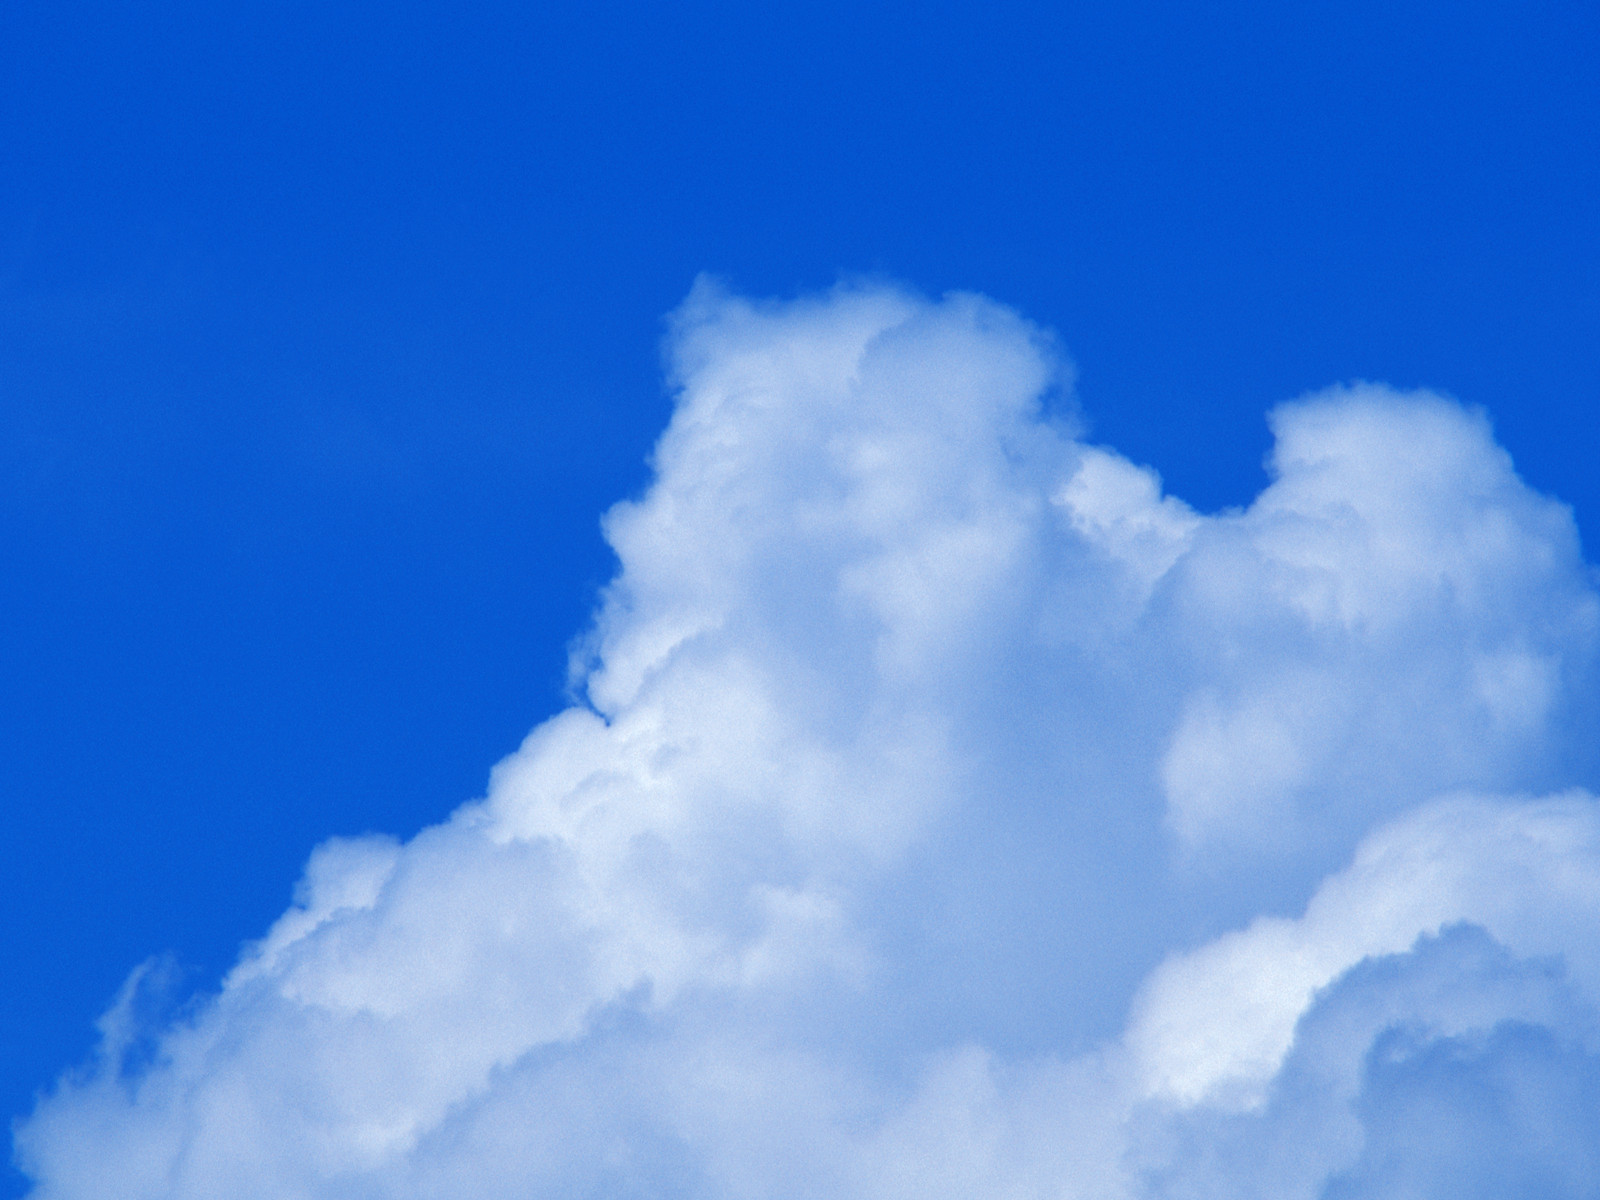 壁纸1600x1200 棉花般的白云 蓝天白云图片壁纸 蔚蓝天空-蓝天白云壁纸壁纸 蔚蓝天空-蓝天白云壁纸图片 蔚蓝天空-蓝天白云壁纸素材 风景壁纸 风景图库 风景图片素材桌面壁纸